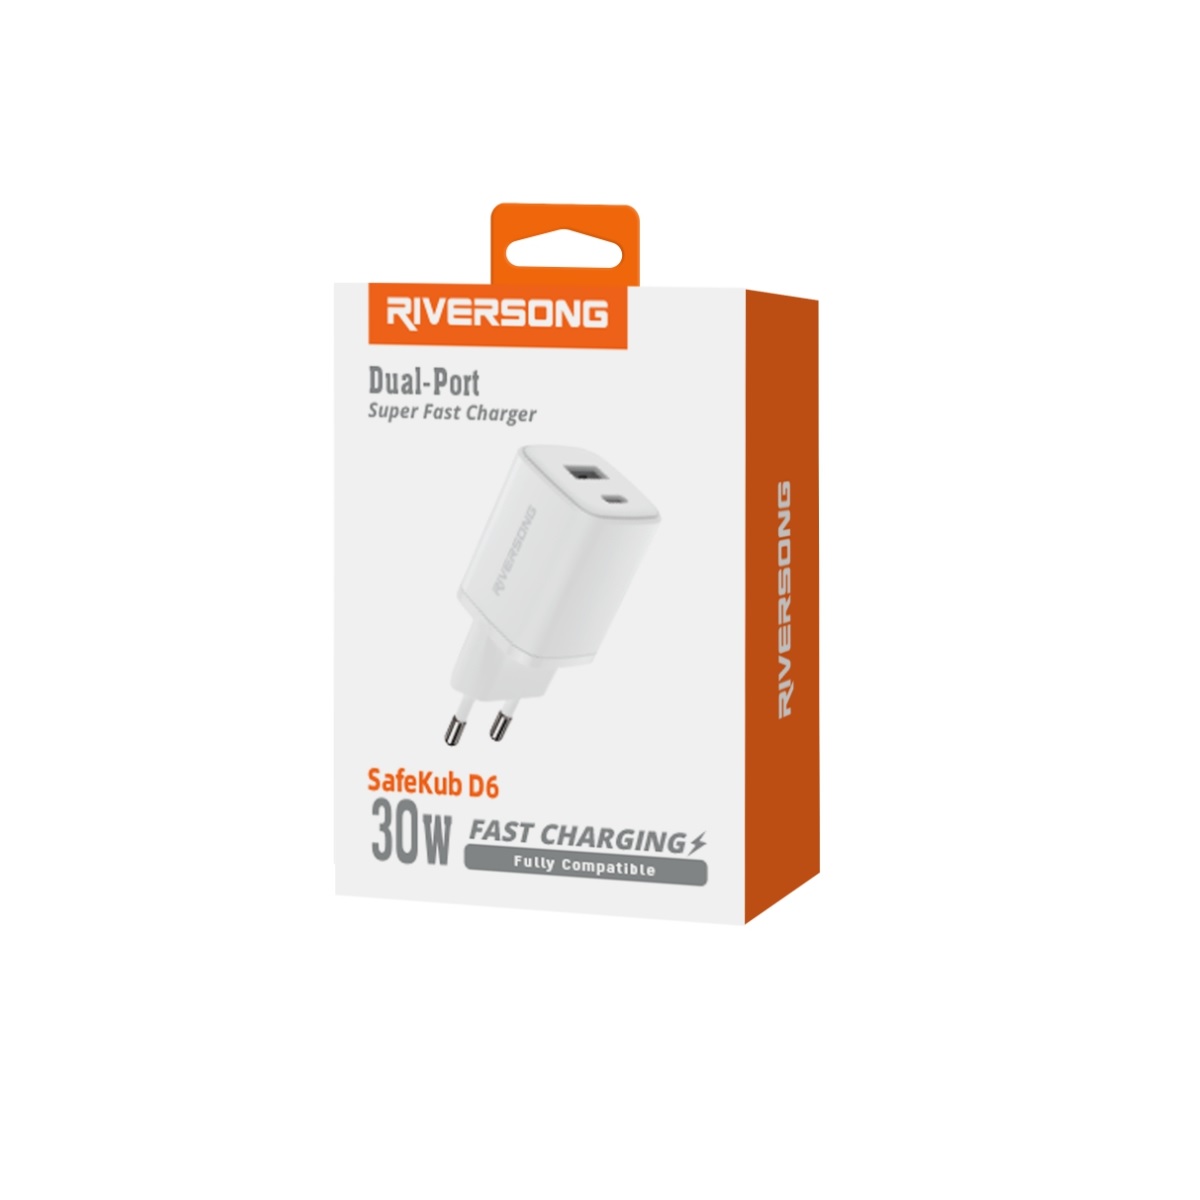 Riversong adowarka sieciowa SafeKub D6 1x USB 1x USB-C 30W biaa AD28 / 3